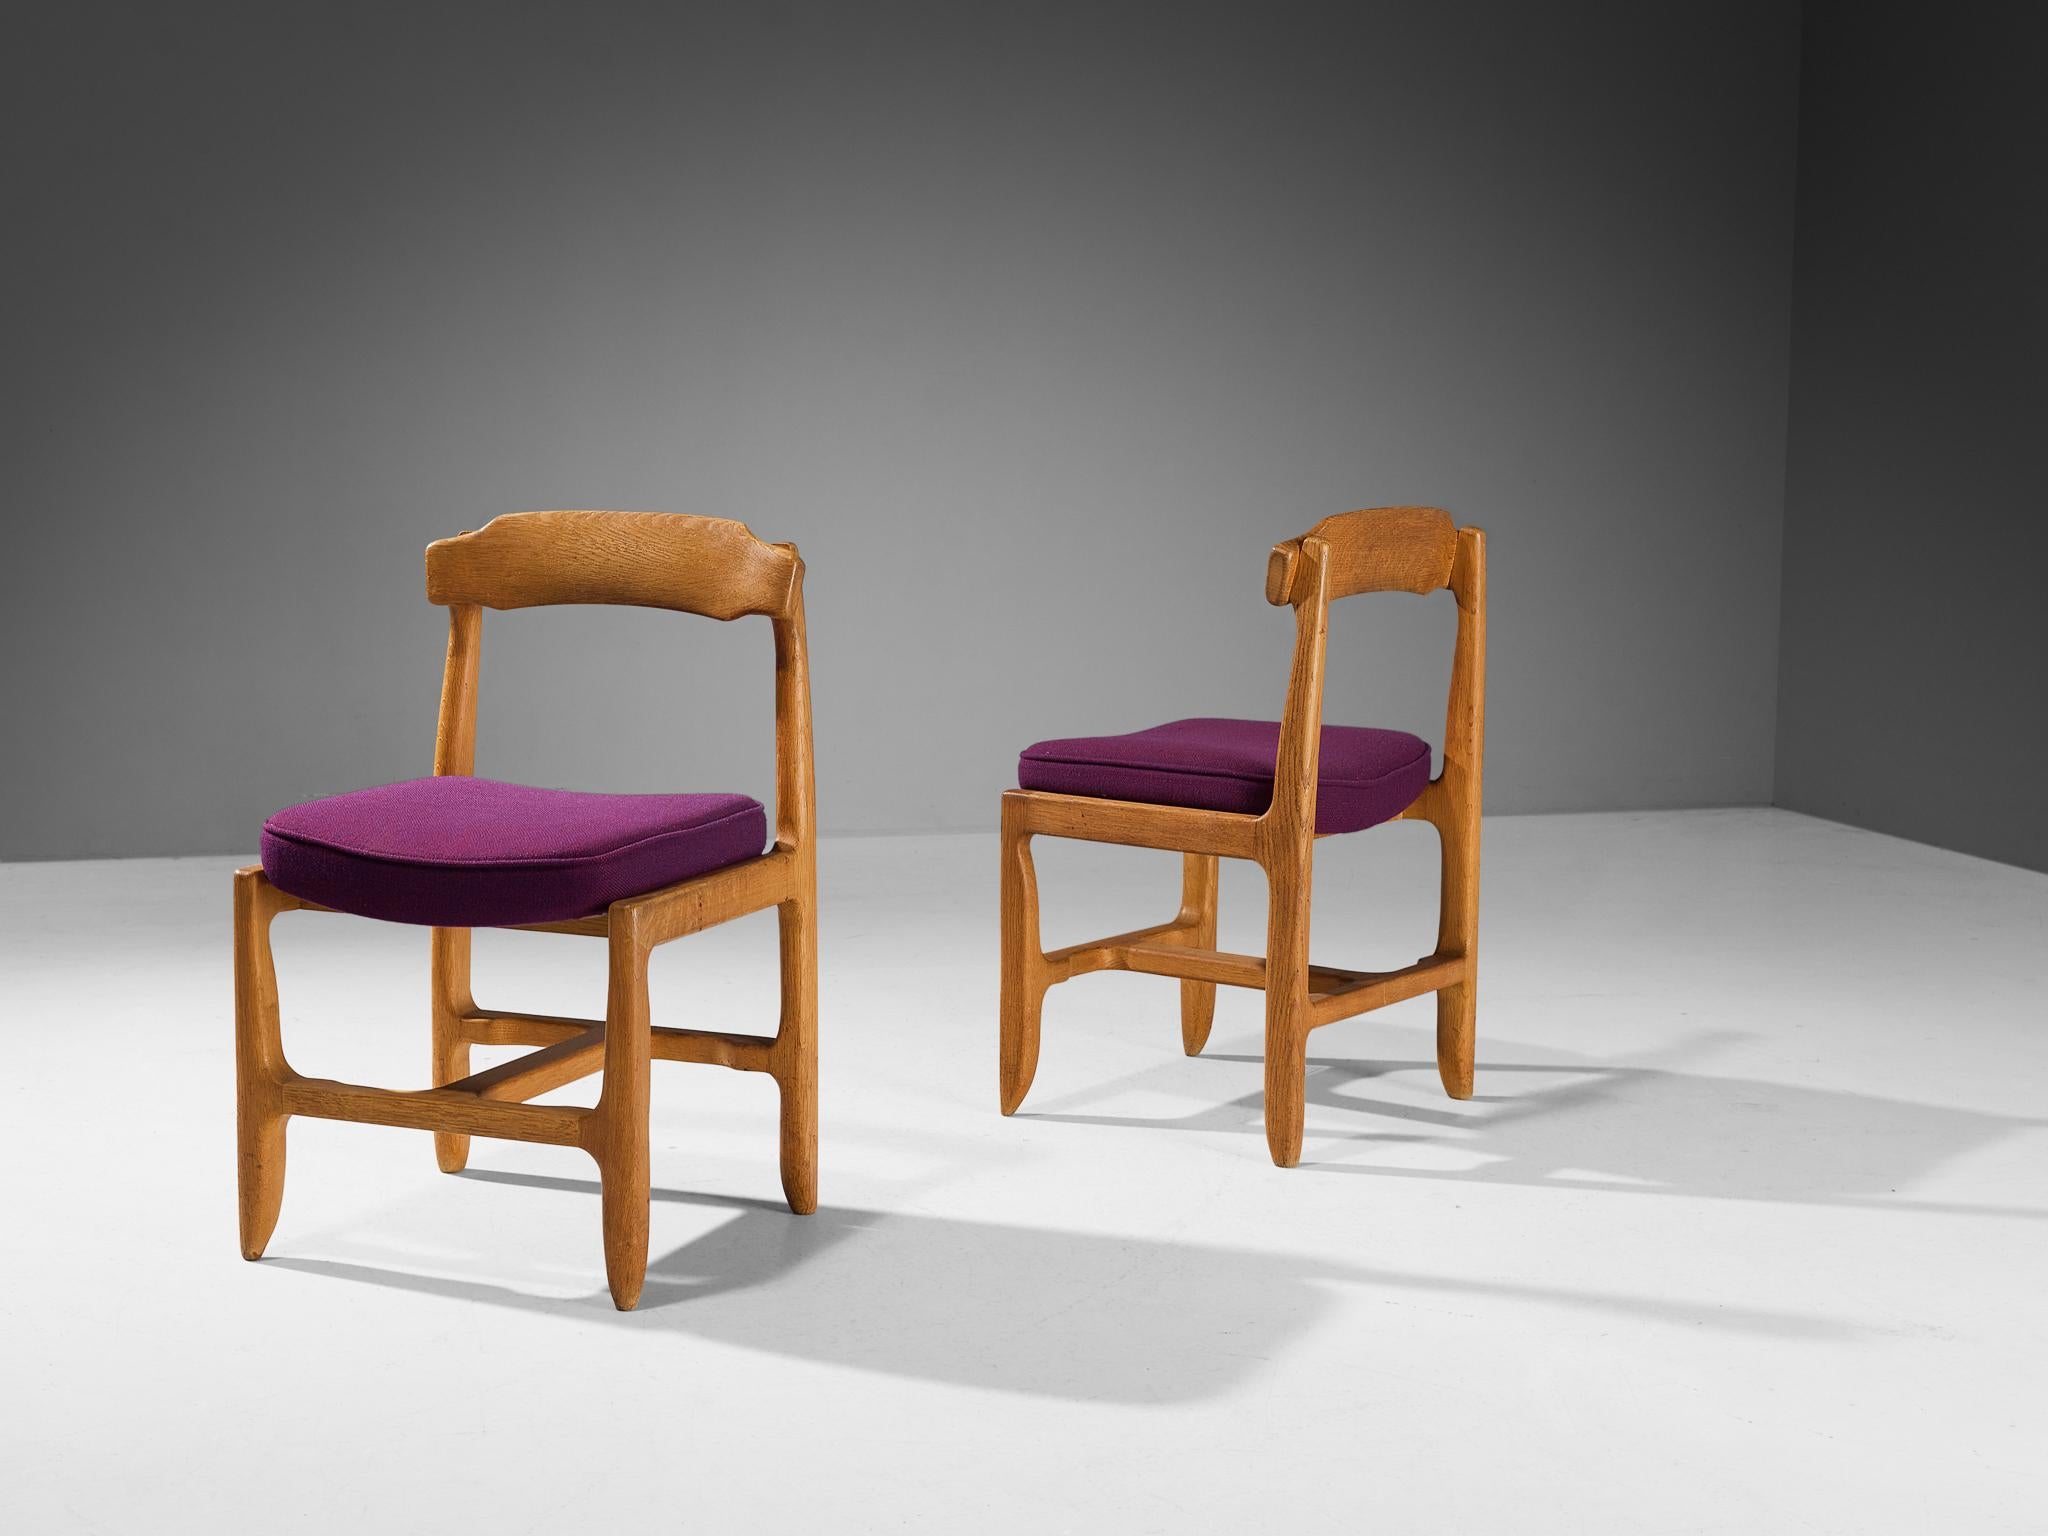 Guillerme et Chambron, paire de chaises de salle à manger, chêne massif, tissu, années 60

Ces chaises originales en chêne massif sont l'œuvre du duo de designers français Jacques Chambron et Robert Guillerme. Ces chaises de salle à manger